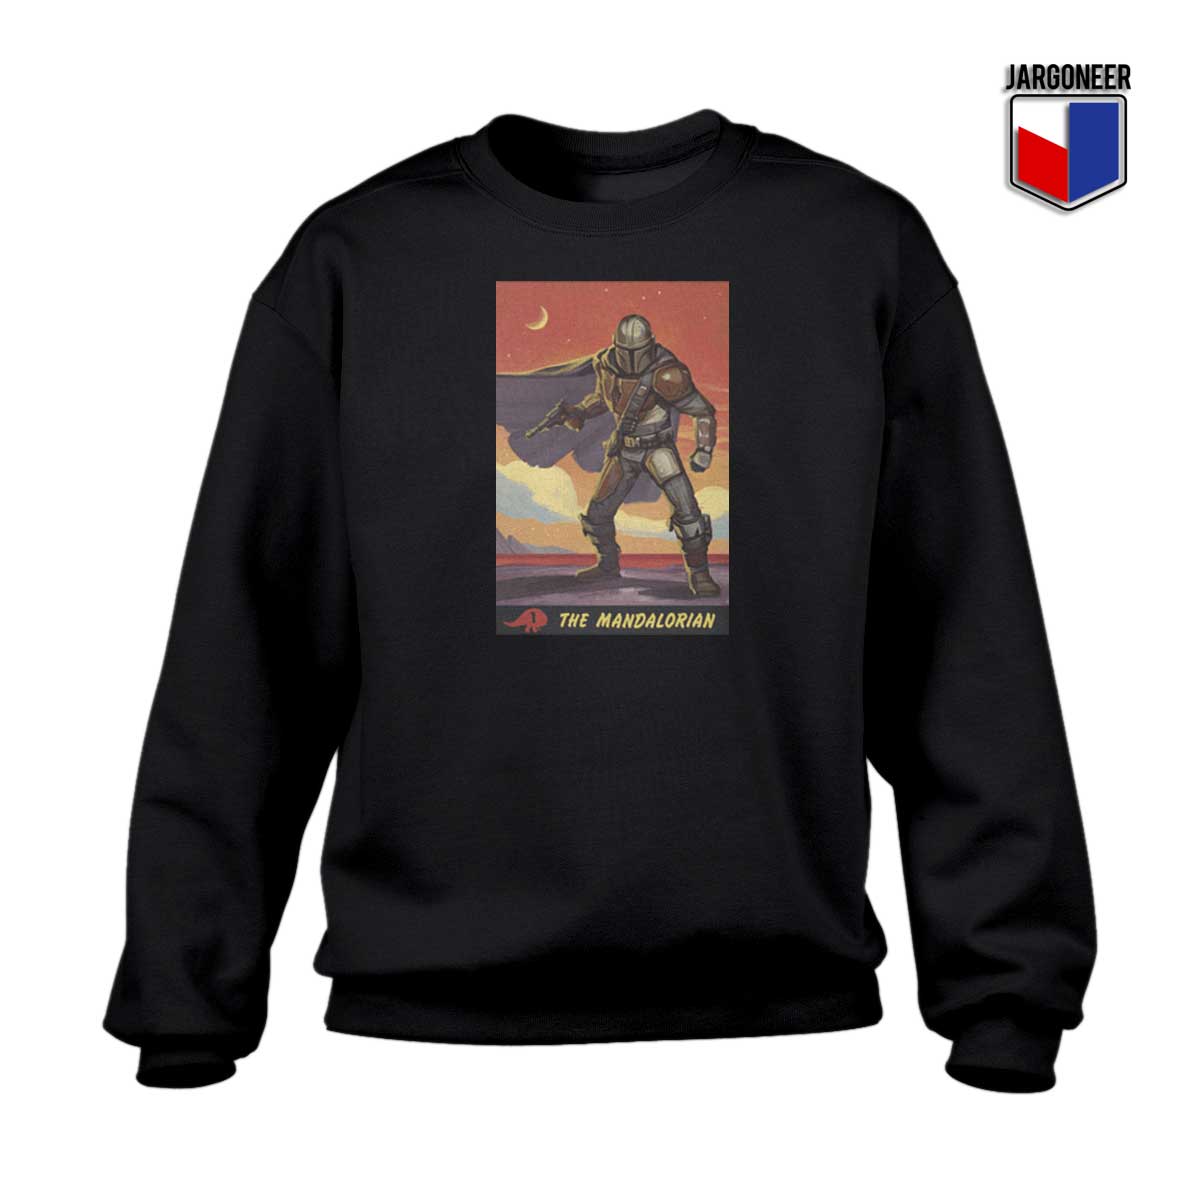 The Mandalorian Poster Sweatshirt - Shop Unique Graphic Cool Shirt Designs